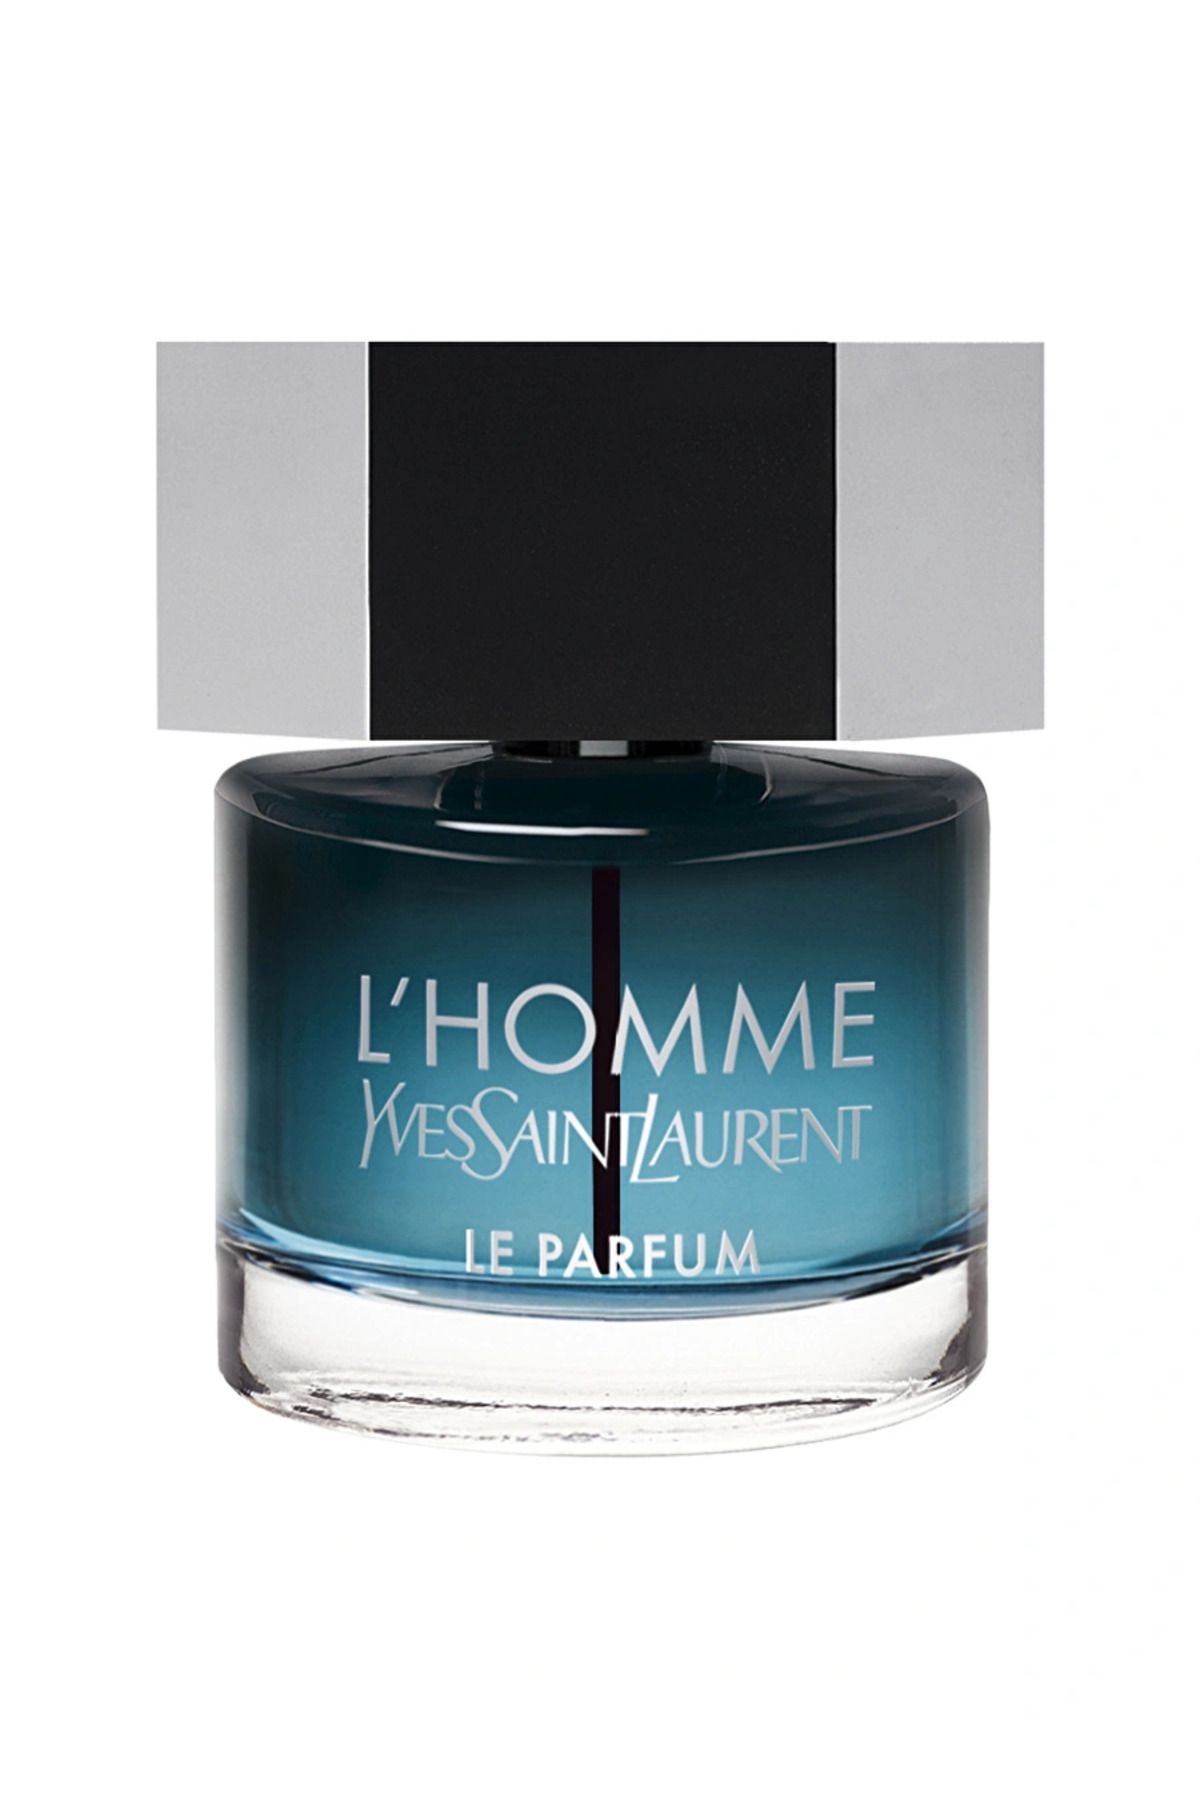 Yves Saint Laurent L'homme Le Parfum 60 ml Edp